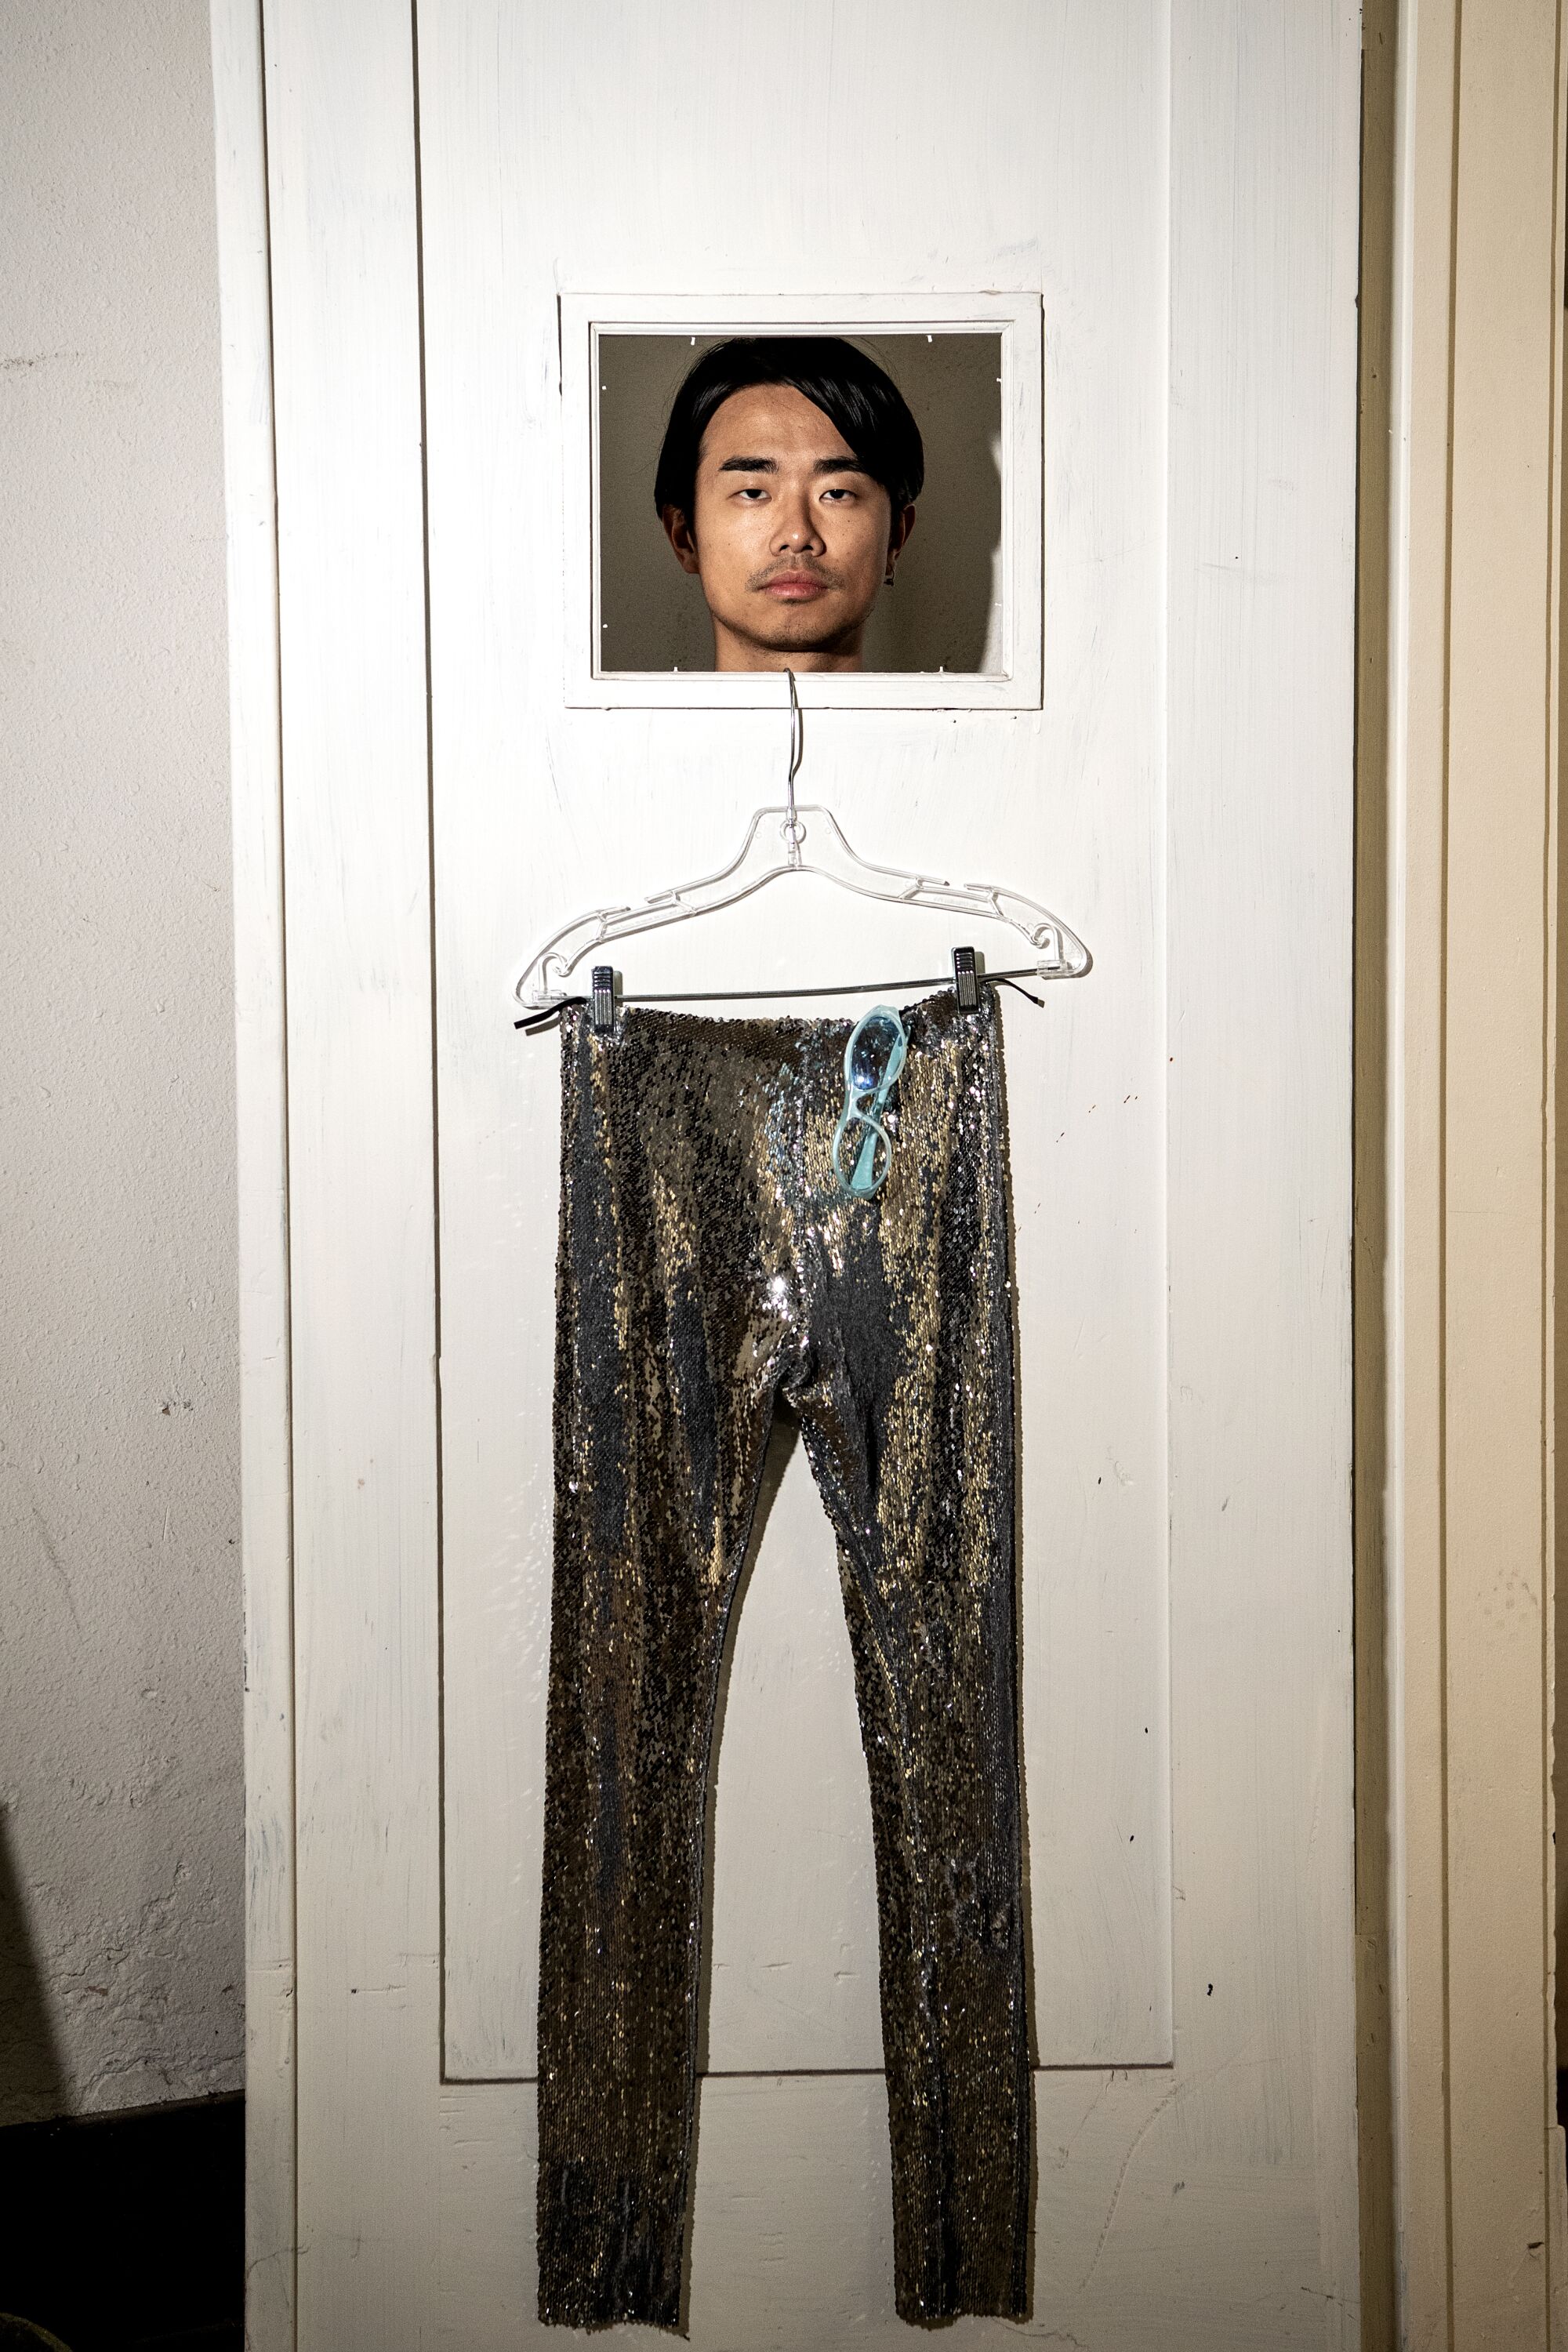 Shaojun Chen looking through a doorframe.